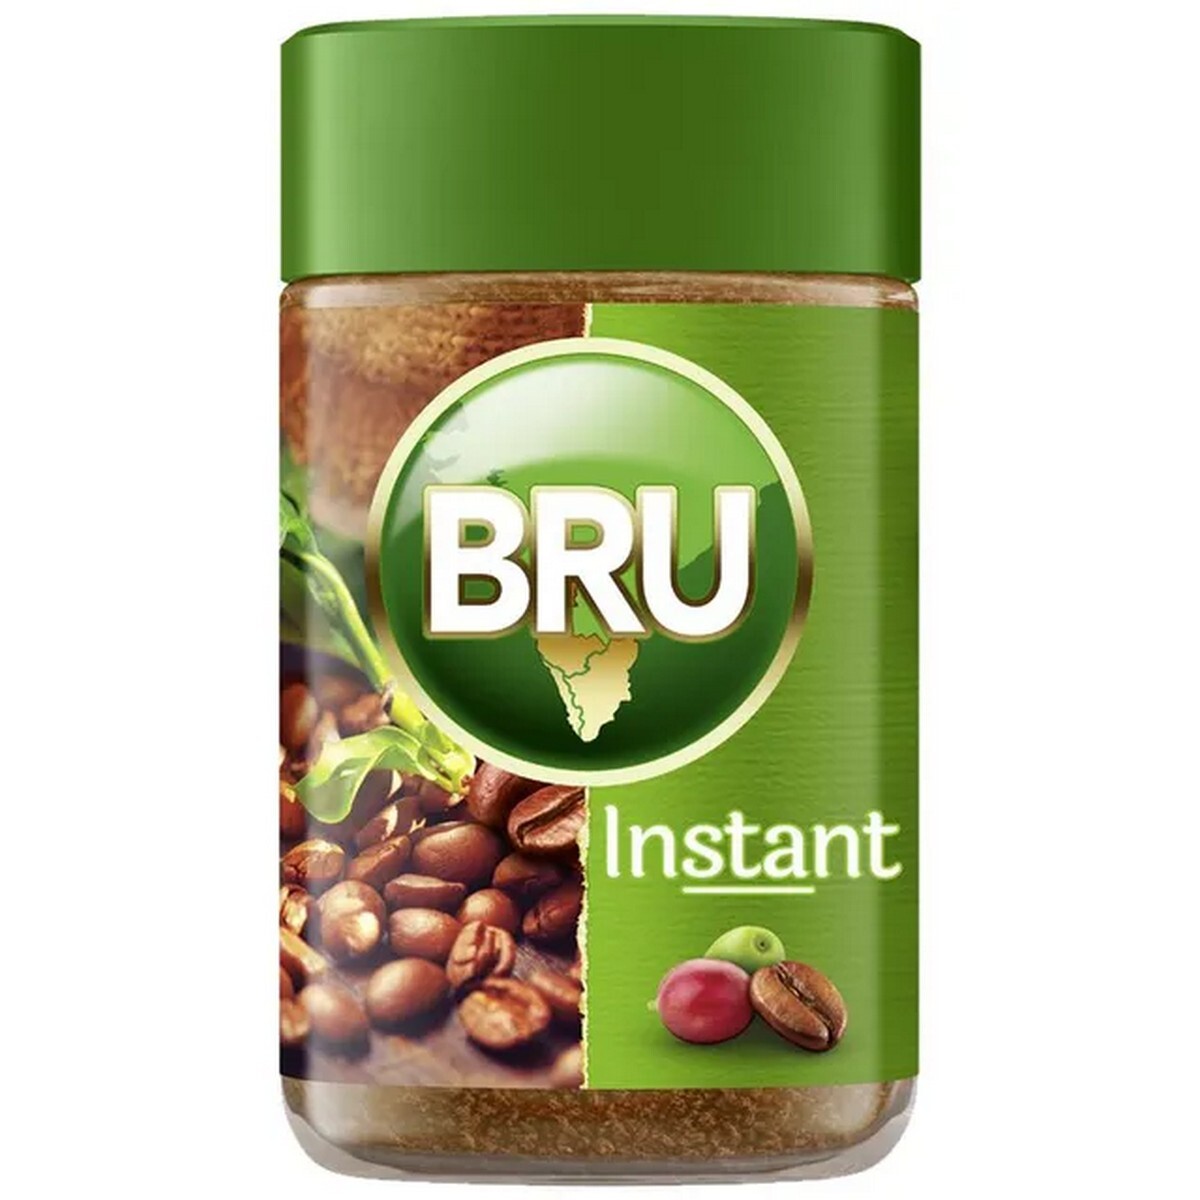 Bru Coffee Gold Jar 100g